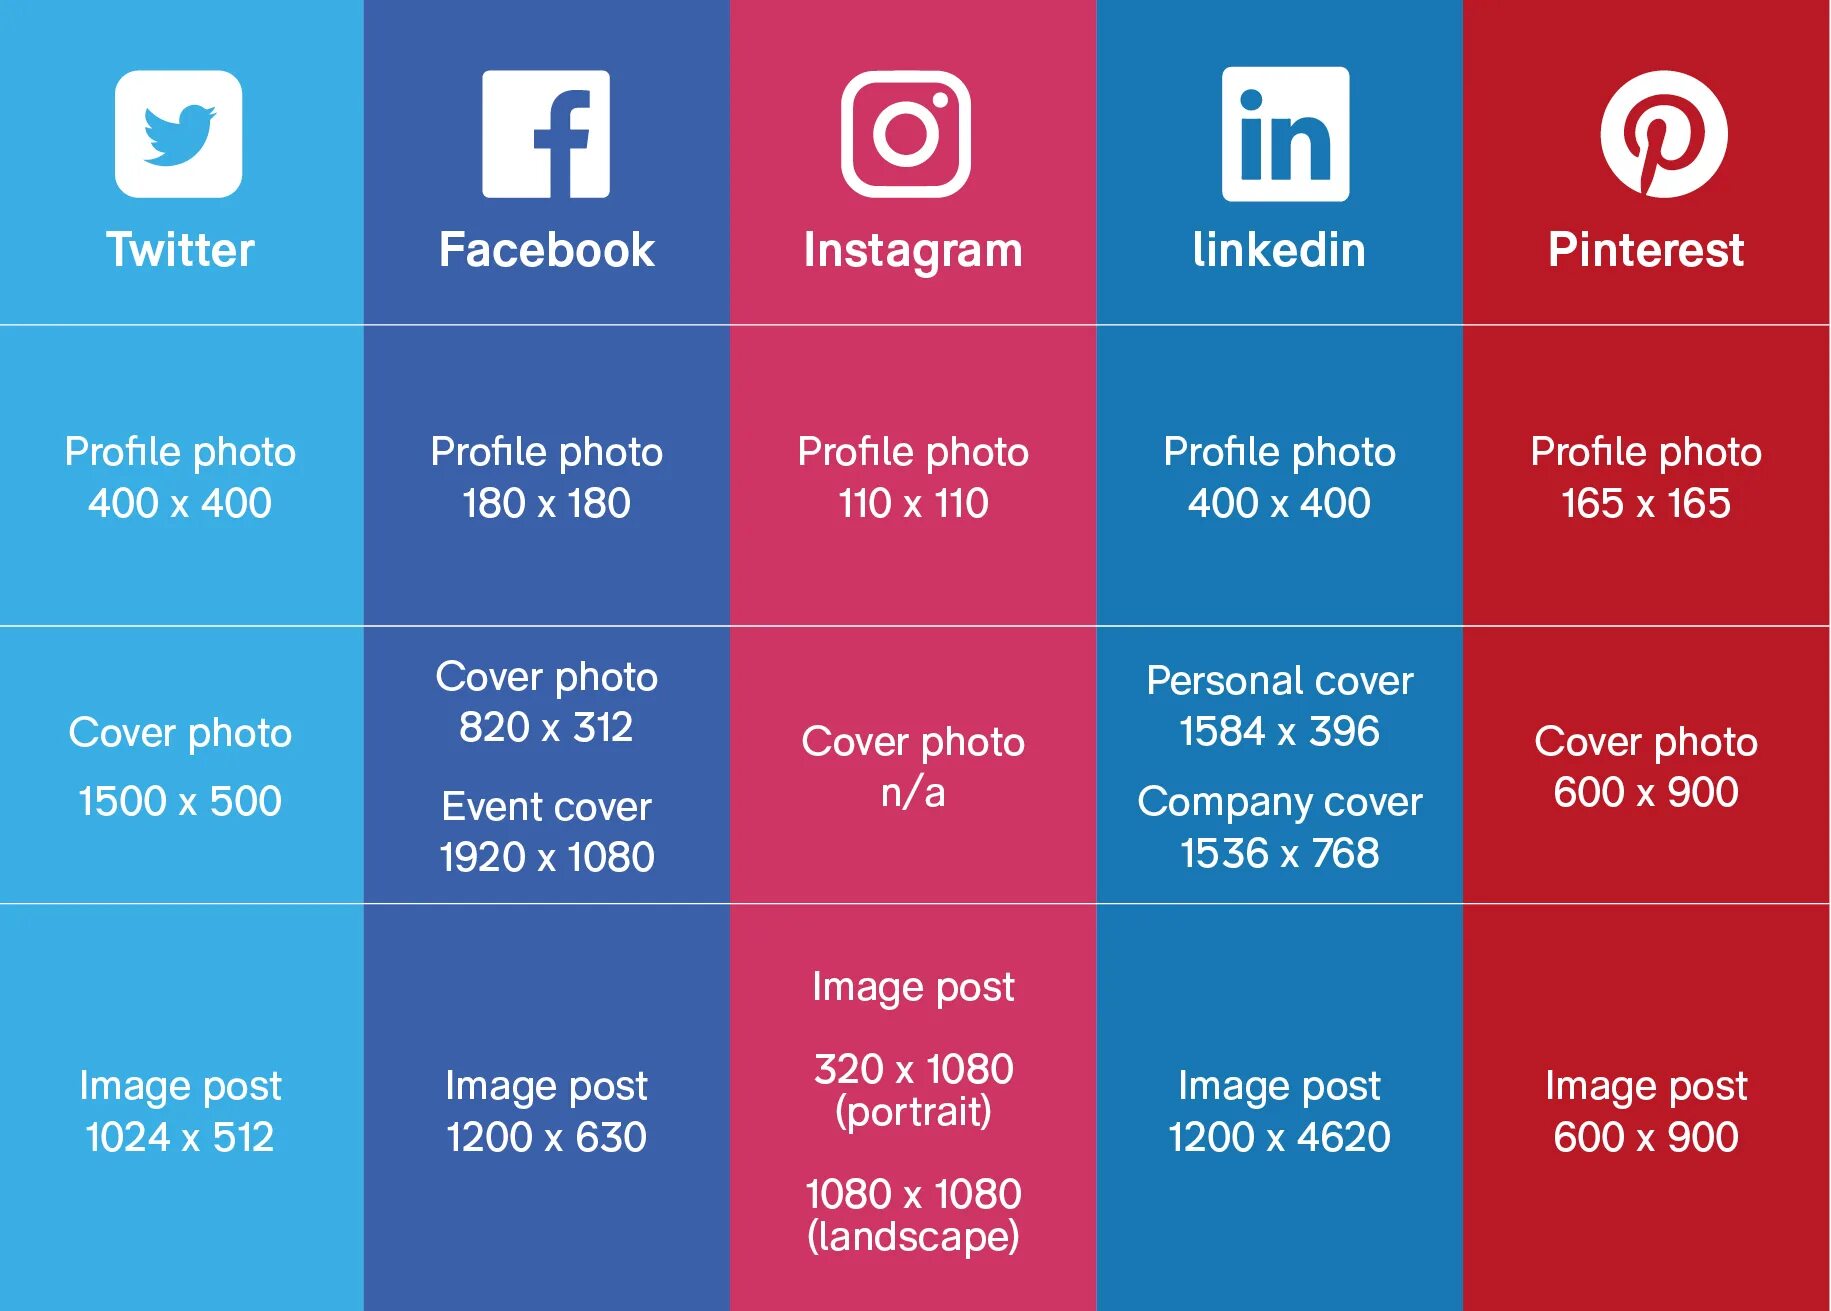 Profile post. Размер картинки для соц сетей. Размер иллюстрации для постов в социальных сетях. Размеры social Media. Размеры картинок для постов в соцсетях.